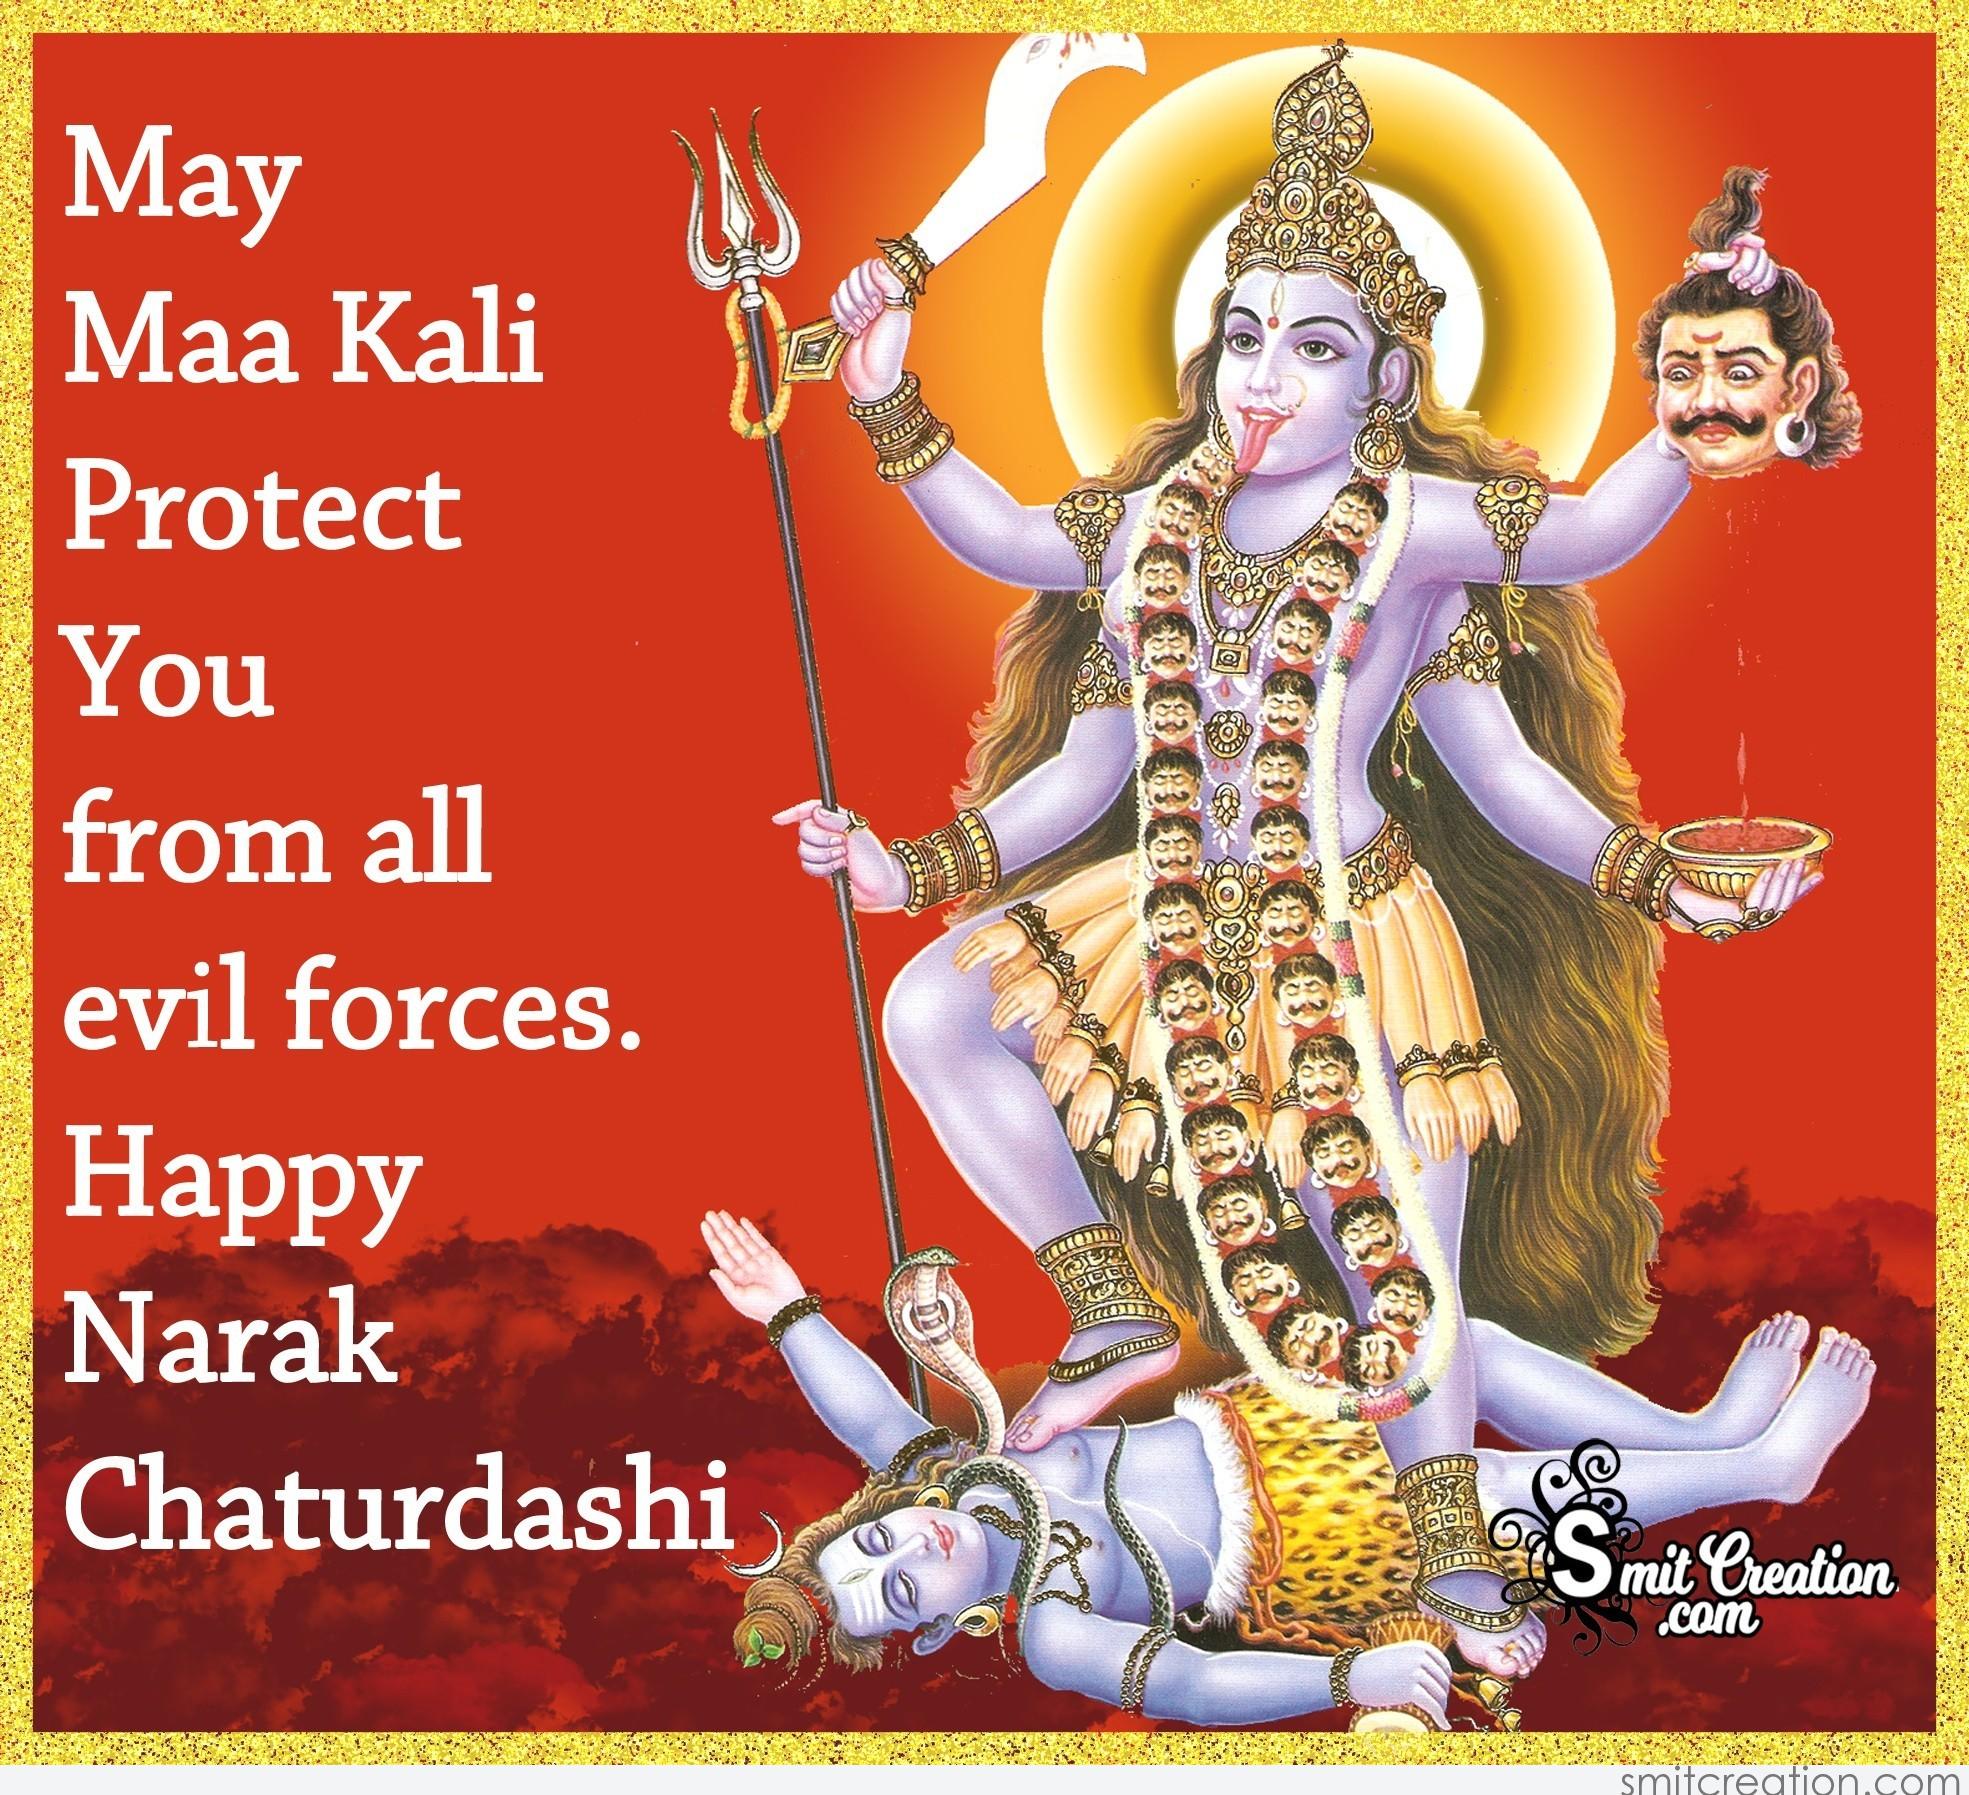 Happy Narak Chaturdashi